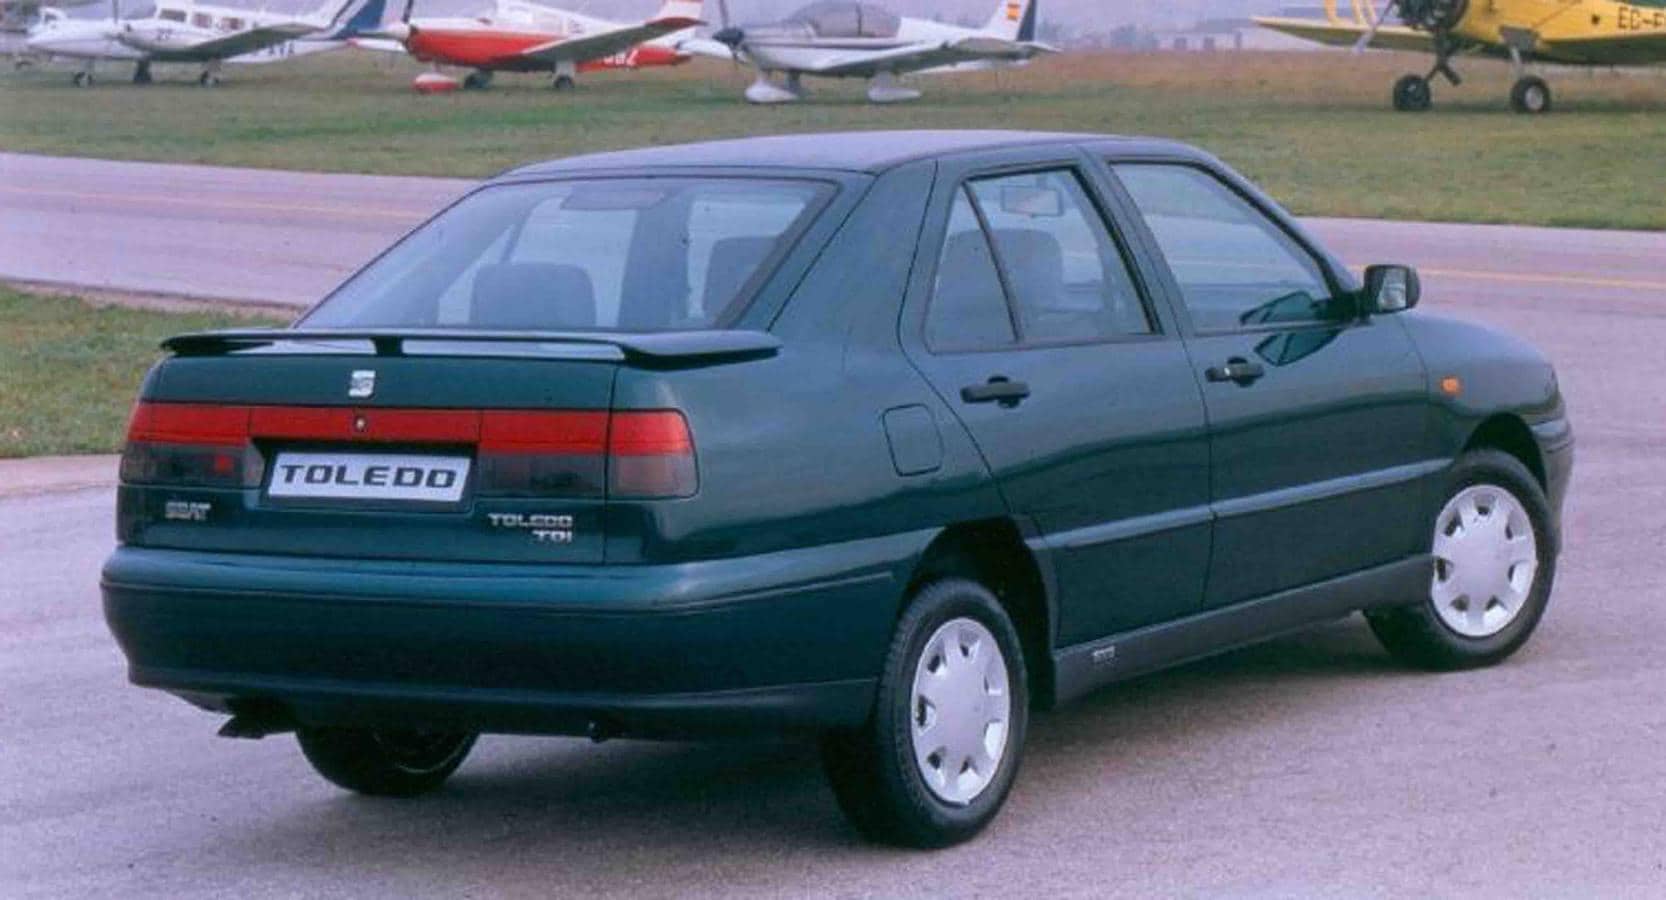 El Seat Toledo nació en 1991, y sigue actualmente en el mercado en su cuarta generación. Lleva ya casi un millón de unidades vendidas. Su precio en el 91 era de 1.638.000 pesetas.